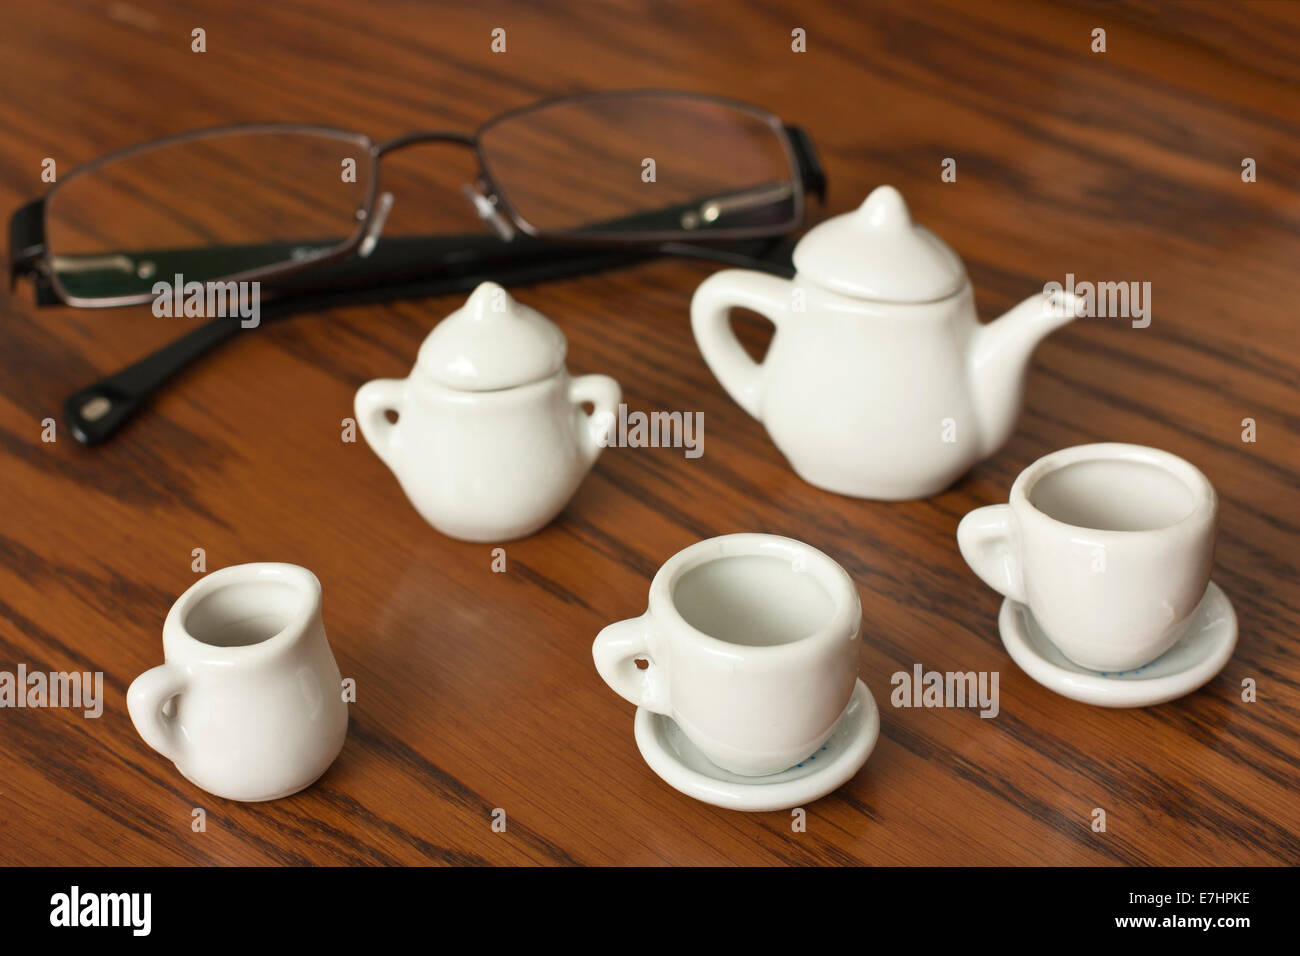 Les petites tasses de café et verres sur bois Banque D'Images